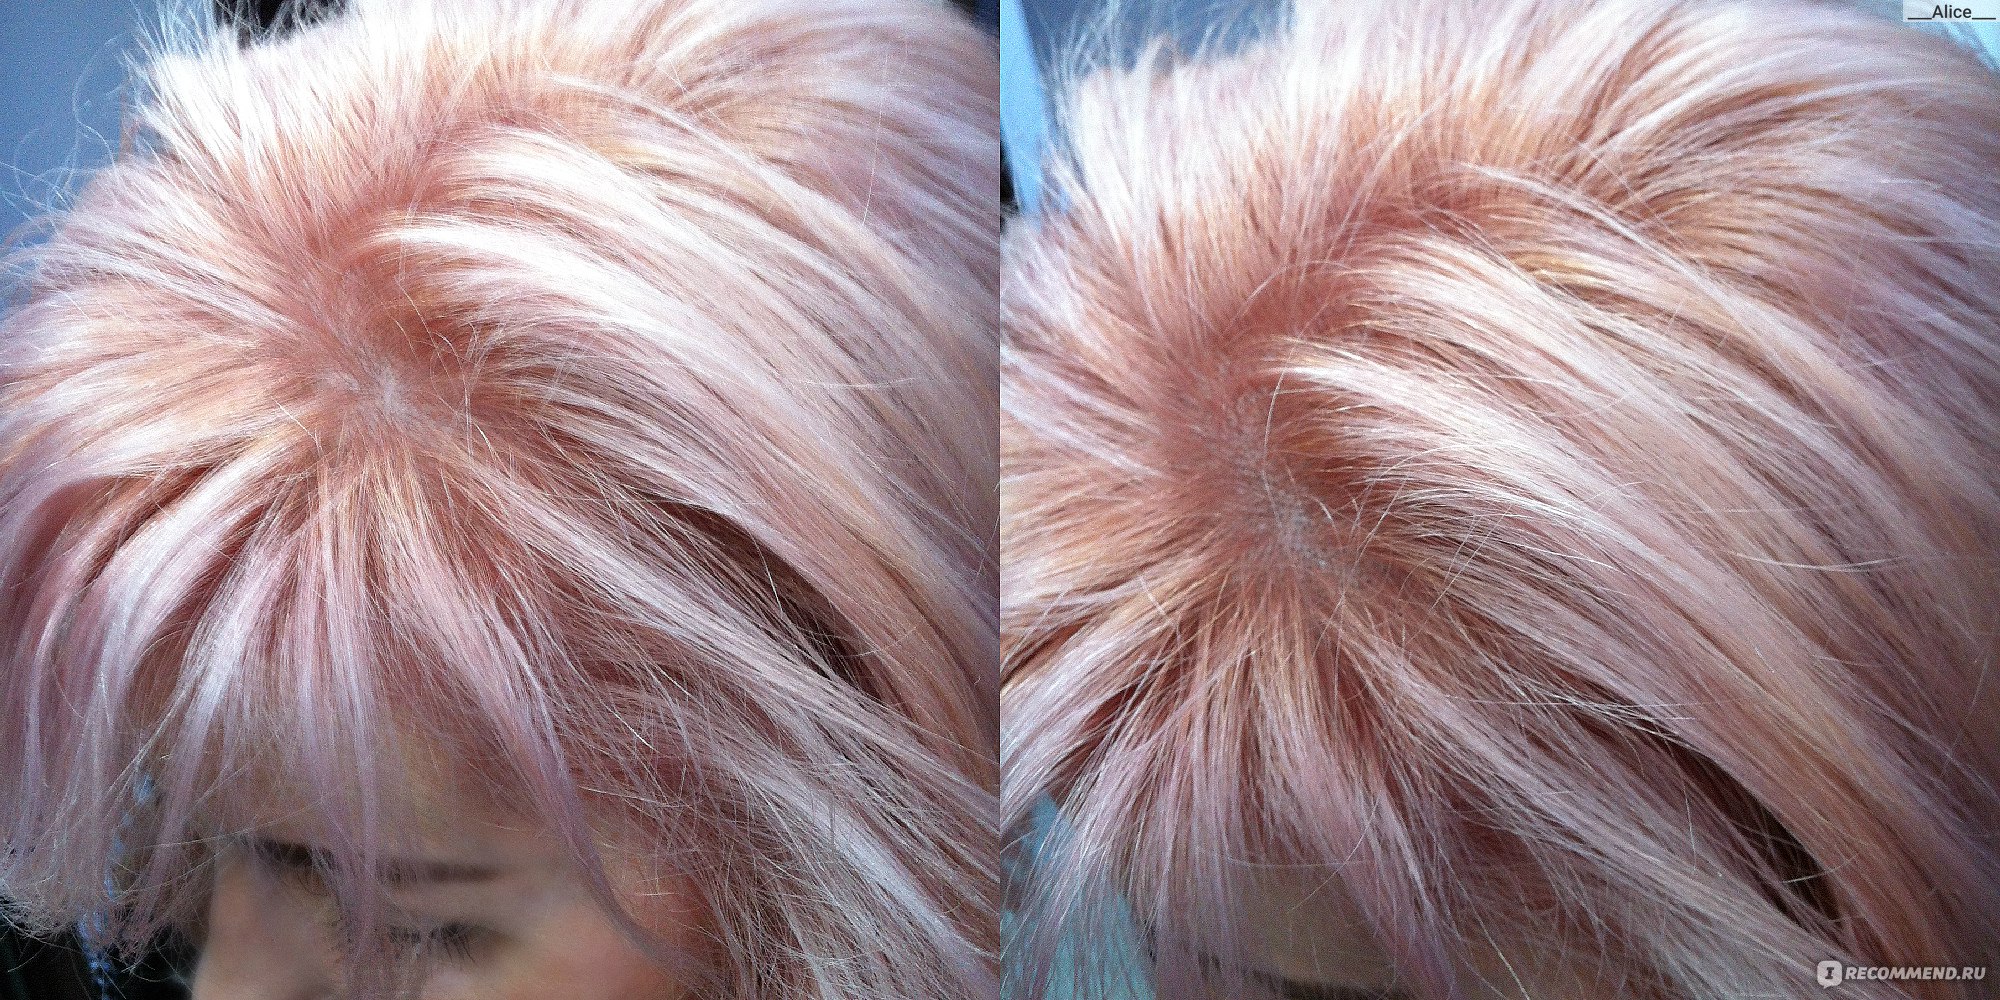 Розовый блонд краска Эстель